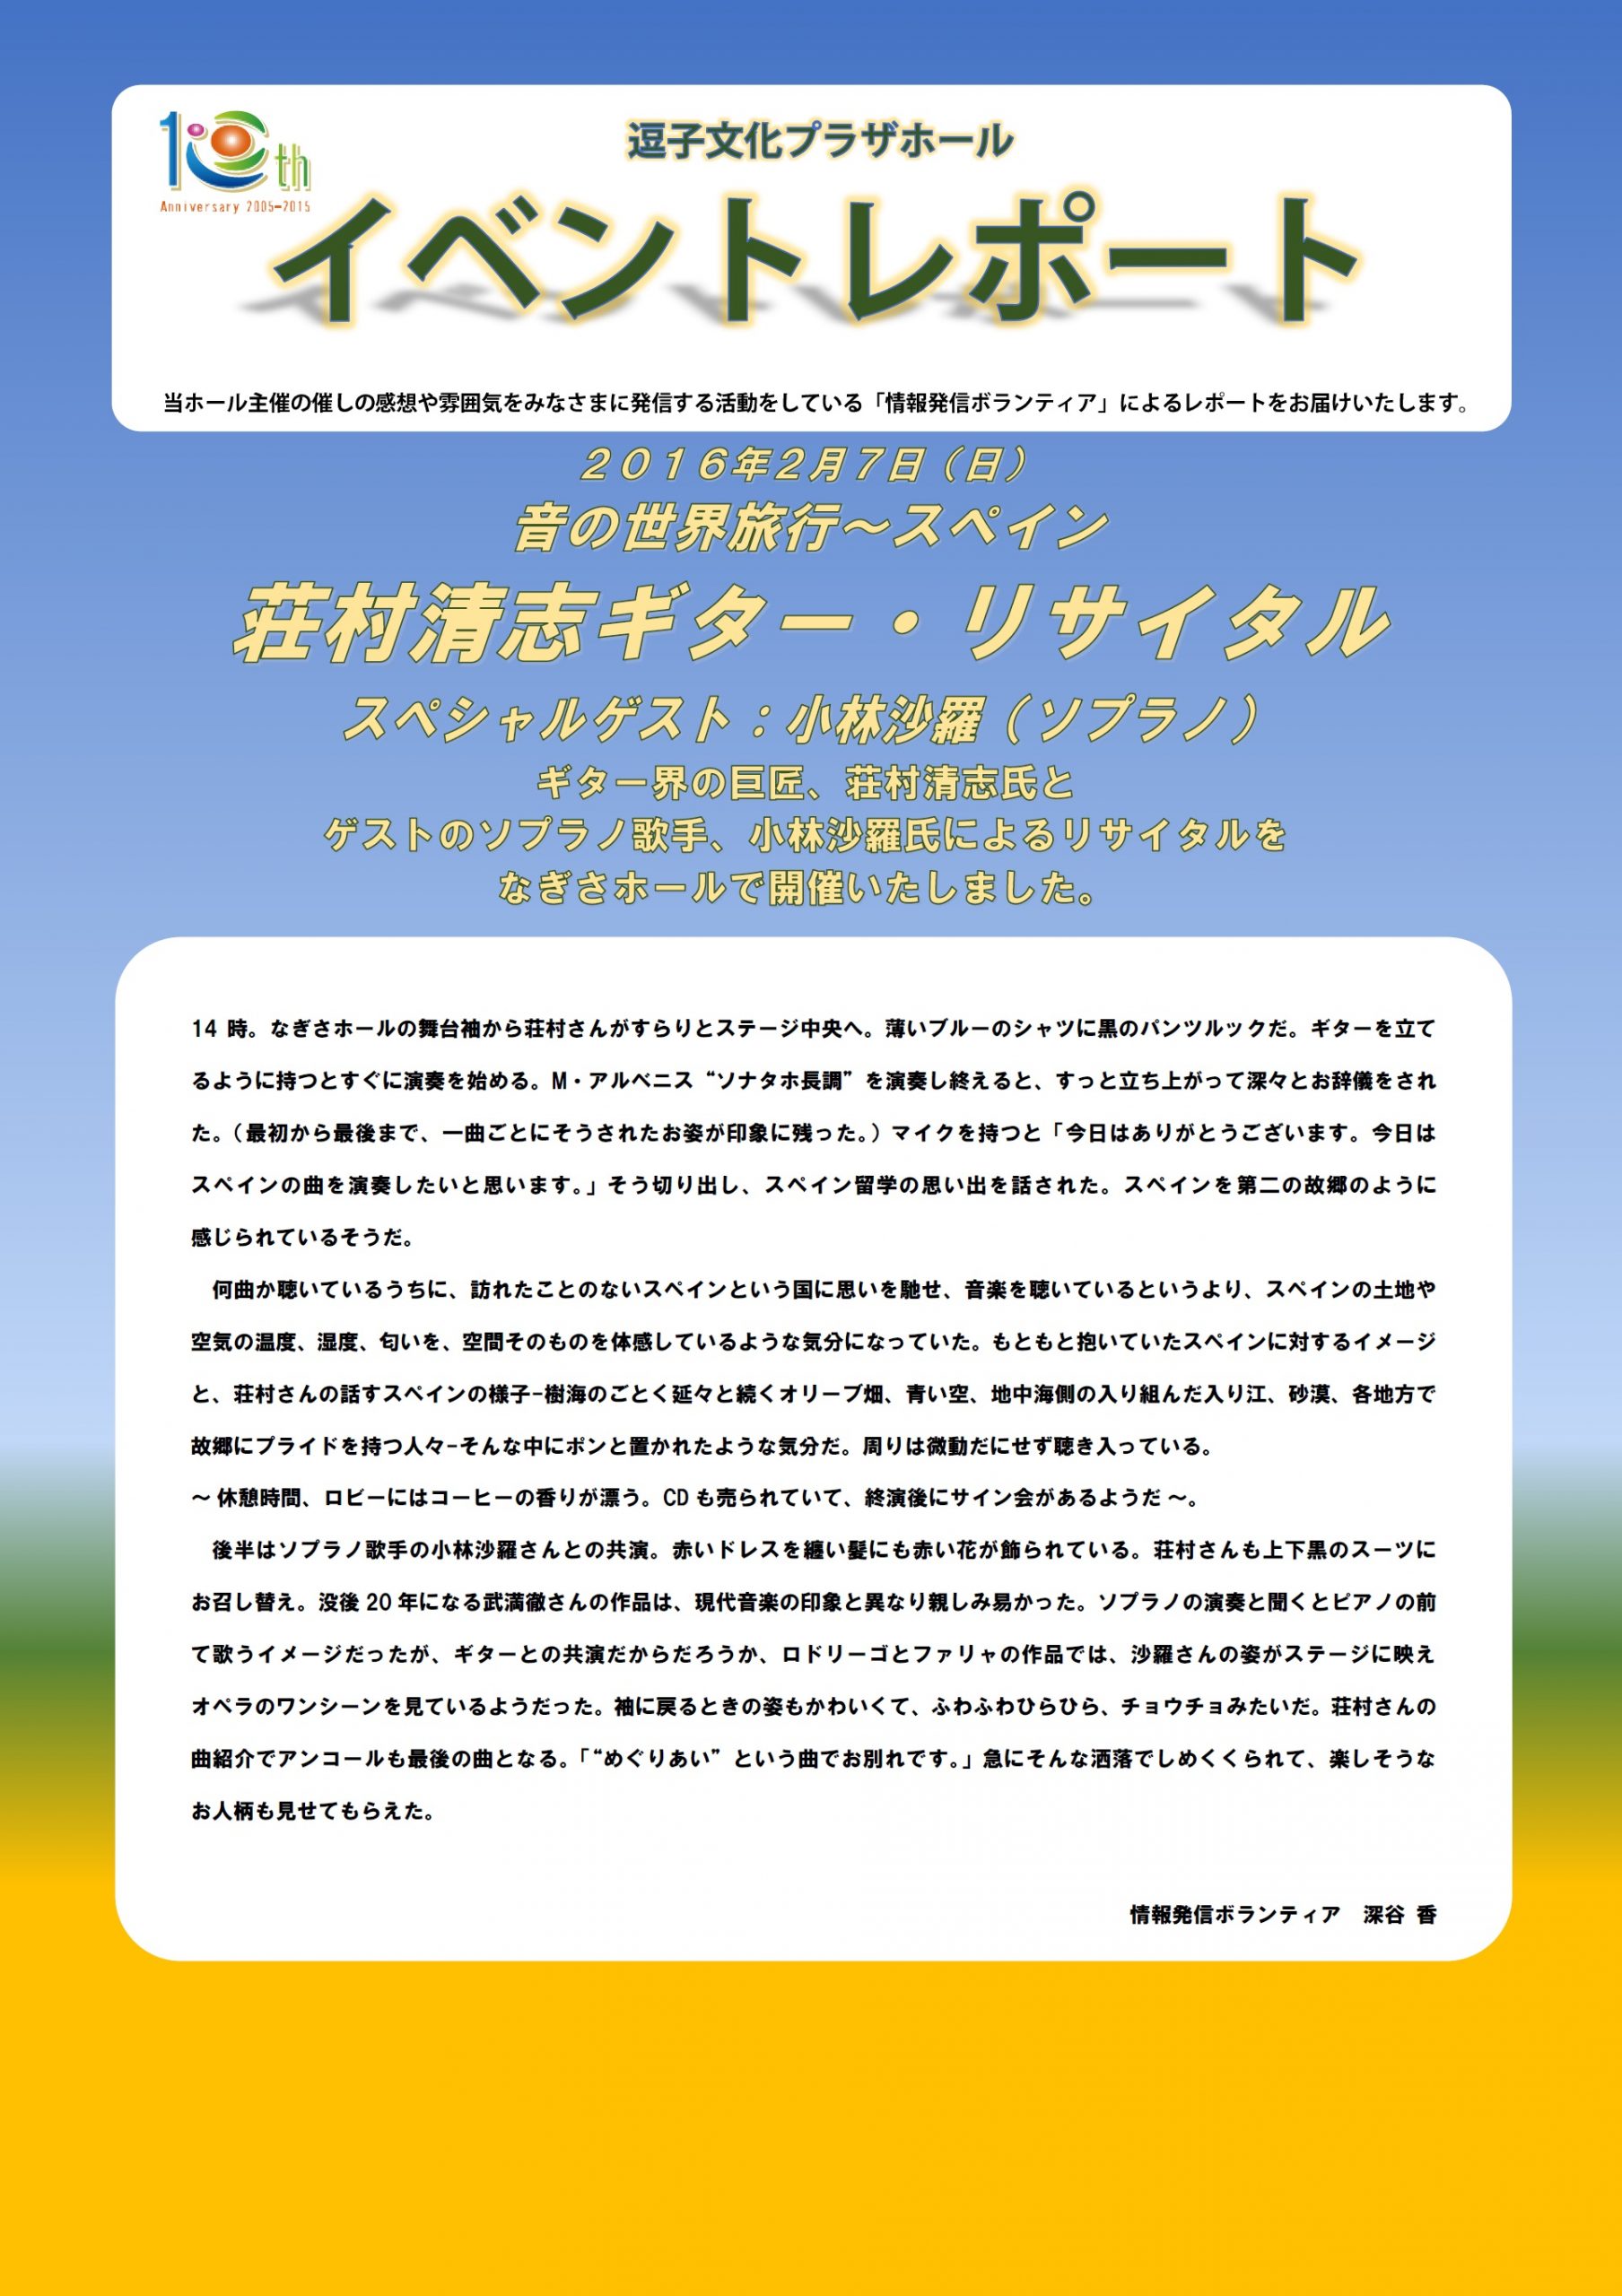 イベントレポート「荘村清志ギター・リサイタル」2016年2月7日（日）開催